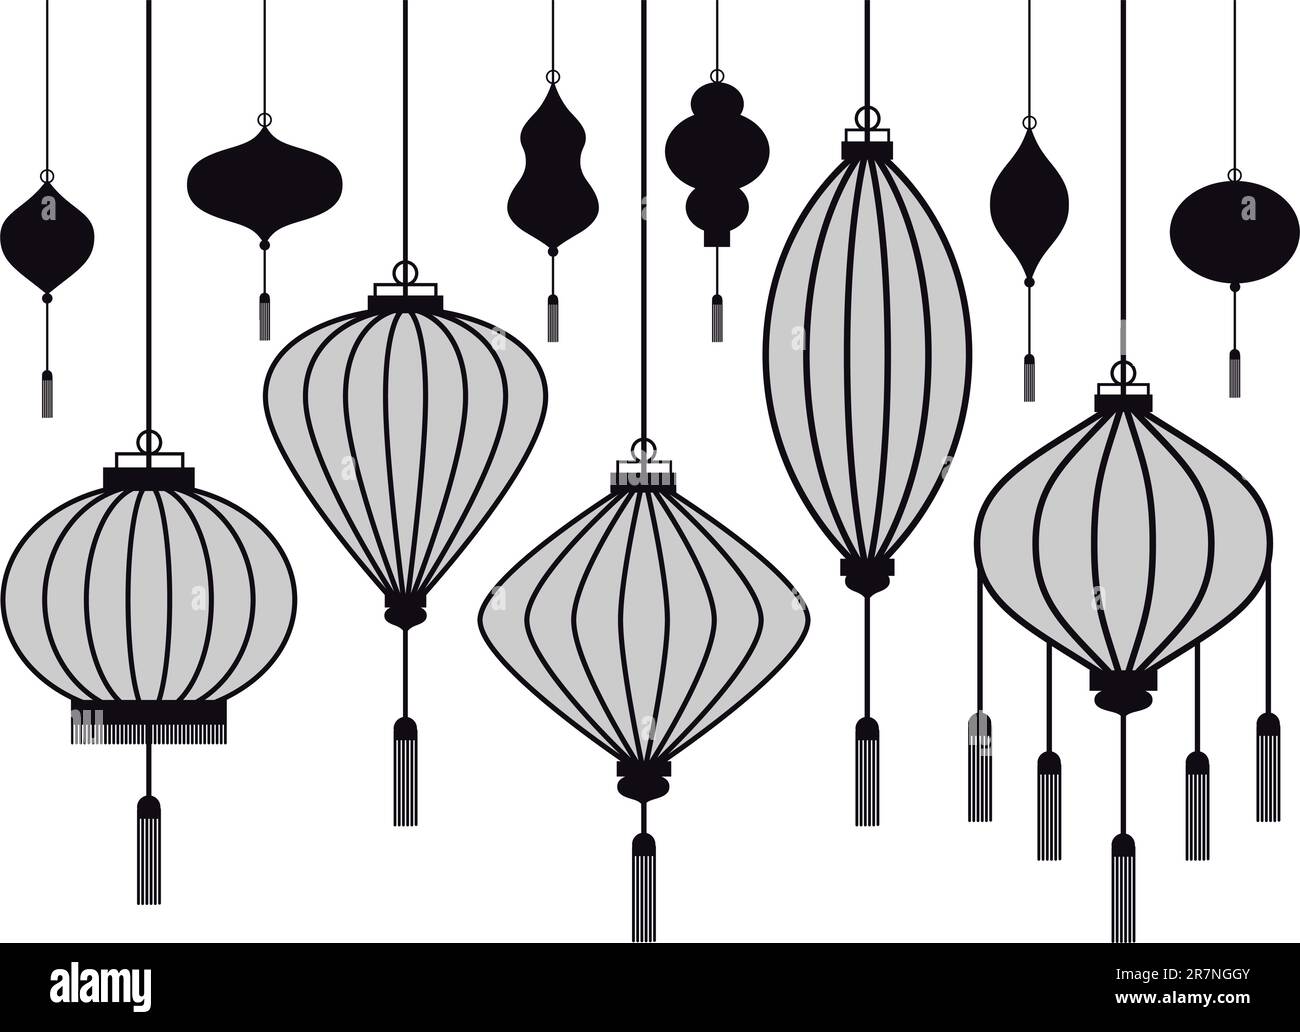 lanterne chinoise, silhouettes vectorielles Illustration de Vecteur